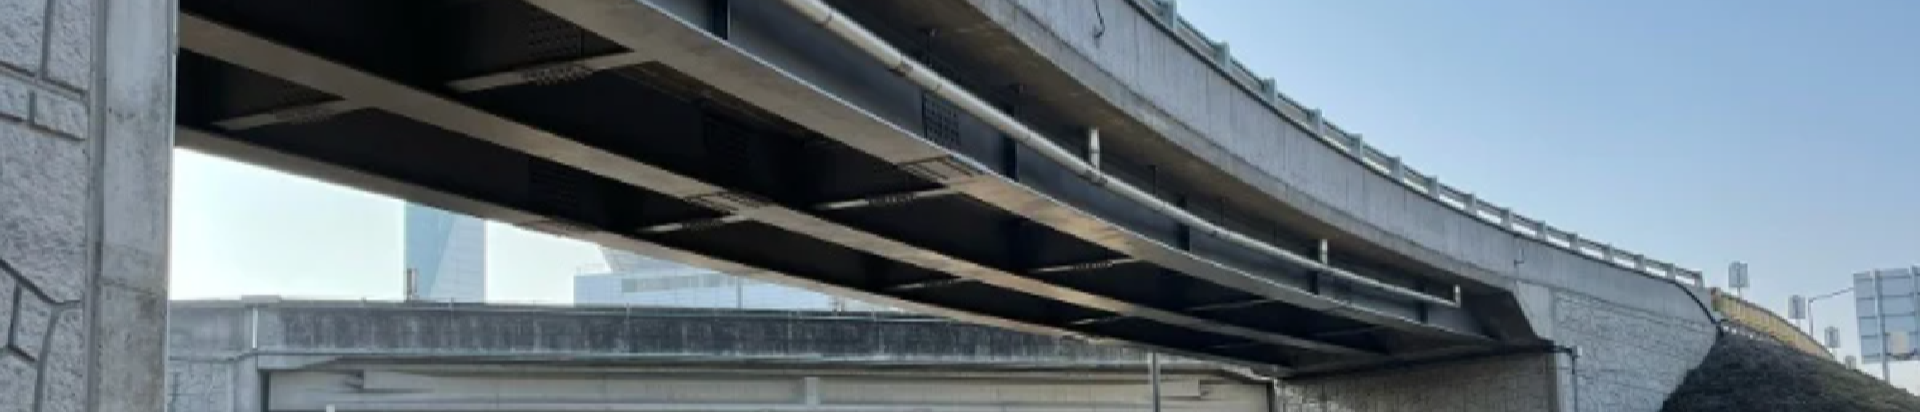 Projekt mostu zintegrowanego o konstrukcji zespolonej stalowo-betonowej